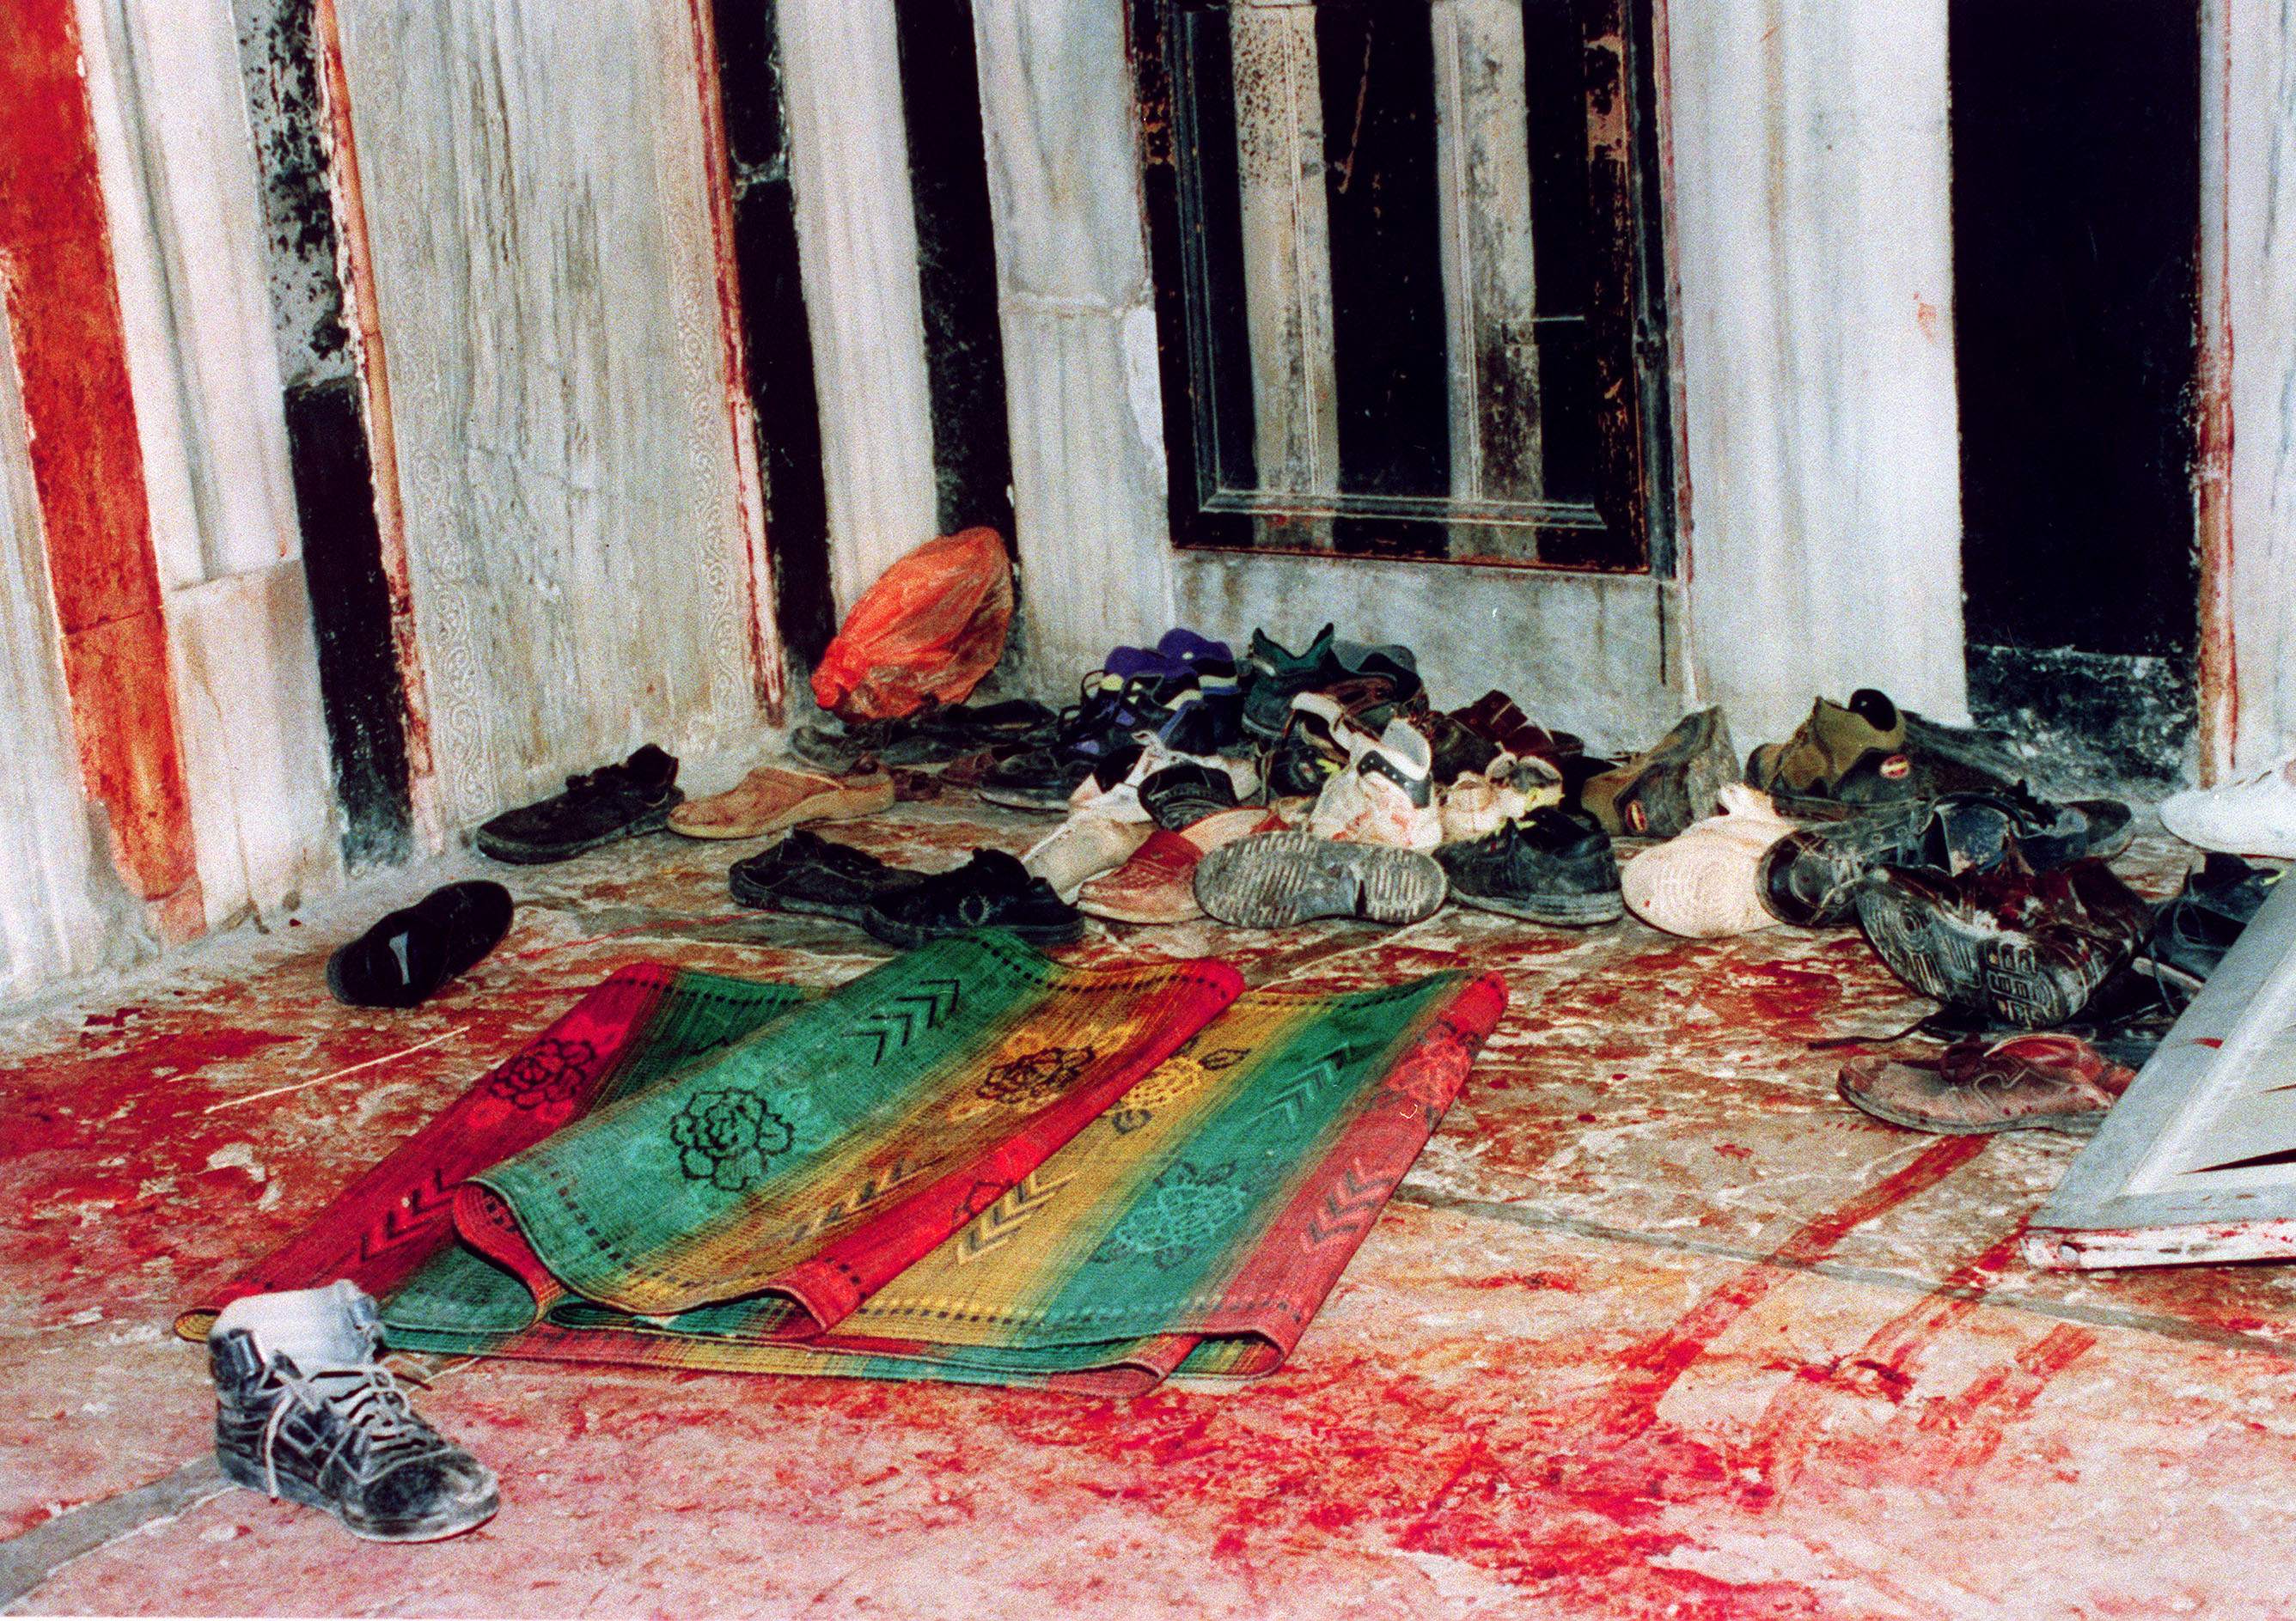 Photo prise à la suite du massacre de la mosquée d’Ibrahim à Hébron, le 25 février 1994 (AFP)